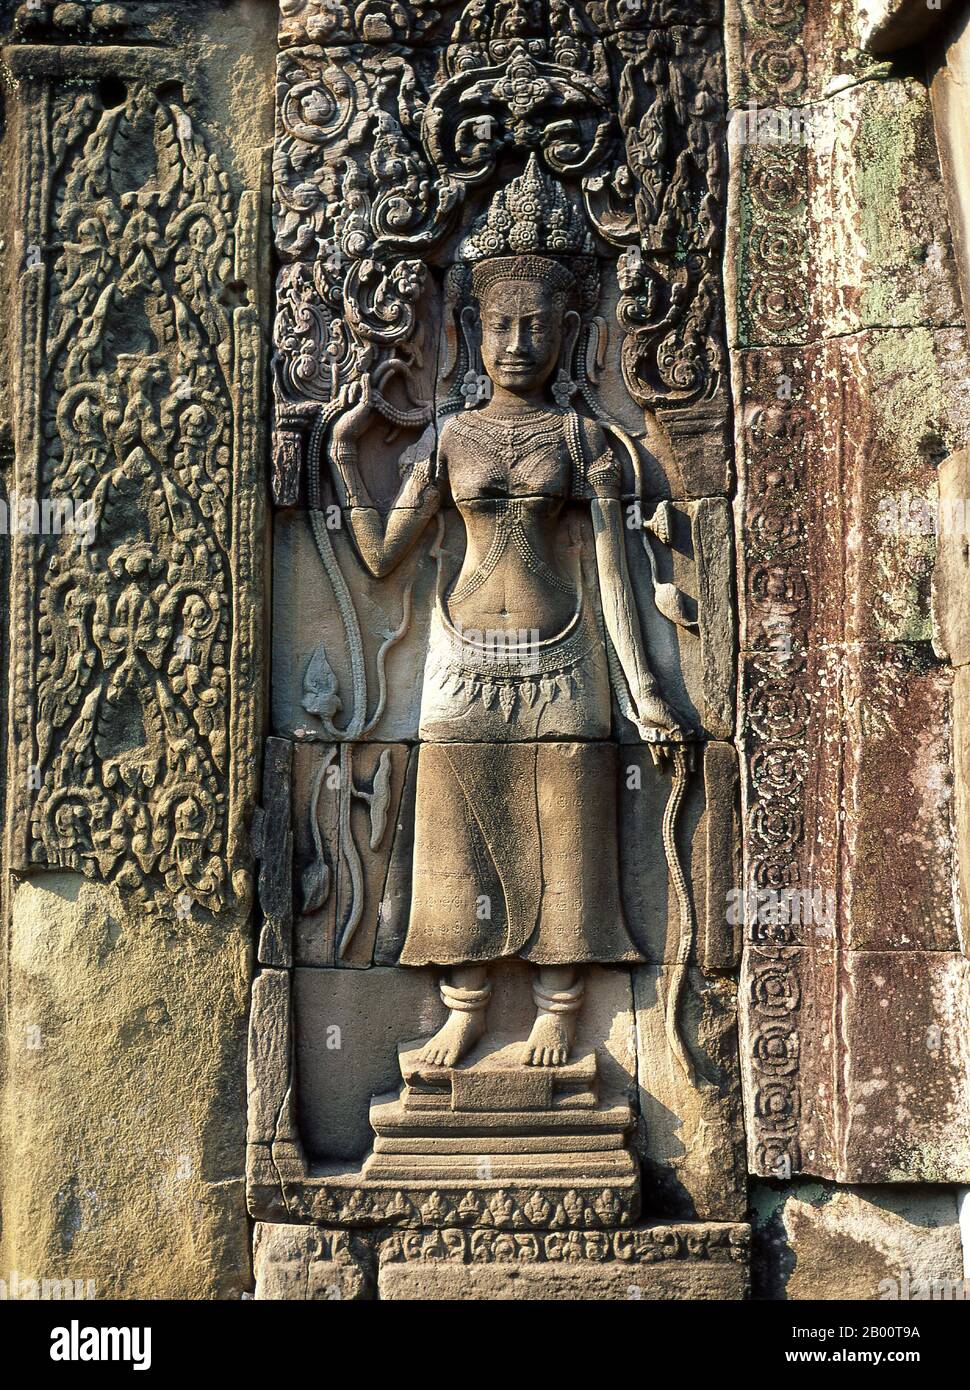 Cambogia: Apsara (Nymph Celestiale), il Bayon, Angkor Thom. Angkor Thom si trova ad un miglio a nord di Angkor Wat. Fu costruito nel tardo 12 ° secolo dal re Jayavarman VII, e copre un'area di 9 km², all'interno del quale si trovano diversi monumenti di epoche precedenti, nonché quelli stabiliti da Jayavarman e i suoi successori. Si ritiene che abbia sostenuto una popolazione di 80,000-150,000 persone. Al centro della città si trova il tempio di stato di Jayavarman, il Bayon, con gli altri siti principali raggruppati intorno alla Piazza della Vittoria immediatamente a nord. Foto Stock